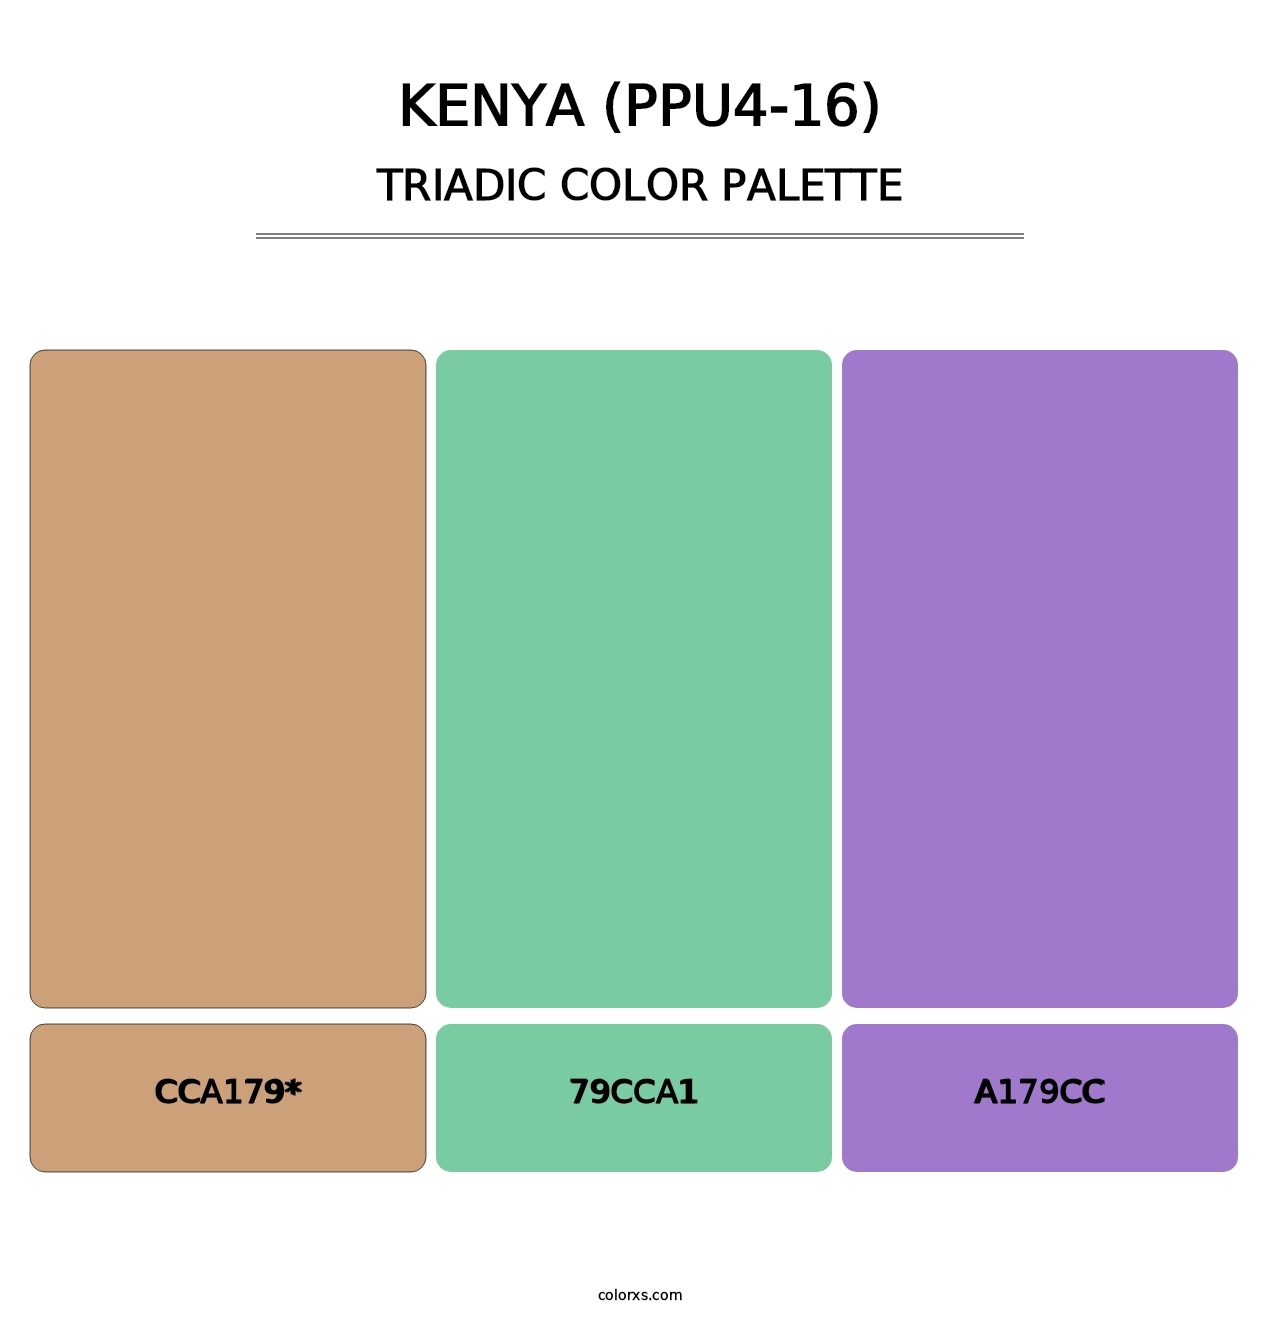 Kenya (PPU4-16) - Triadic Color Palette